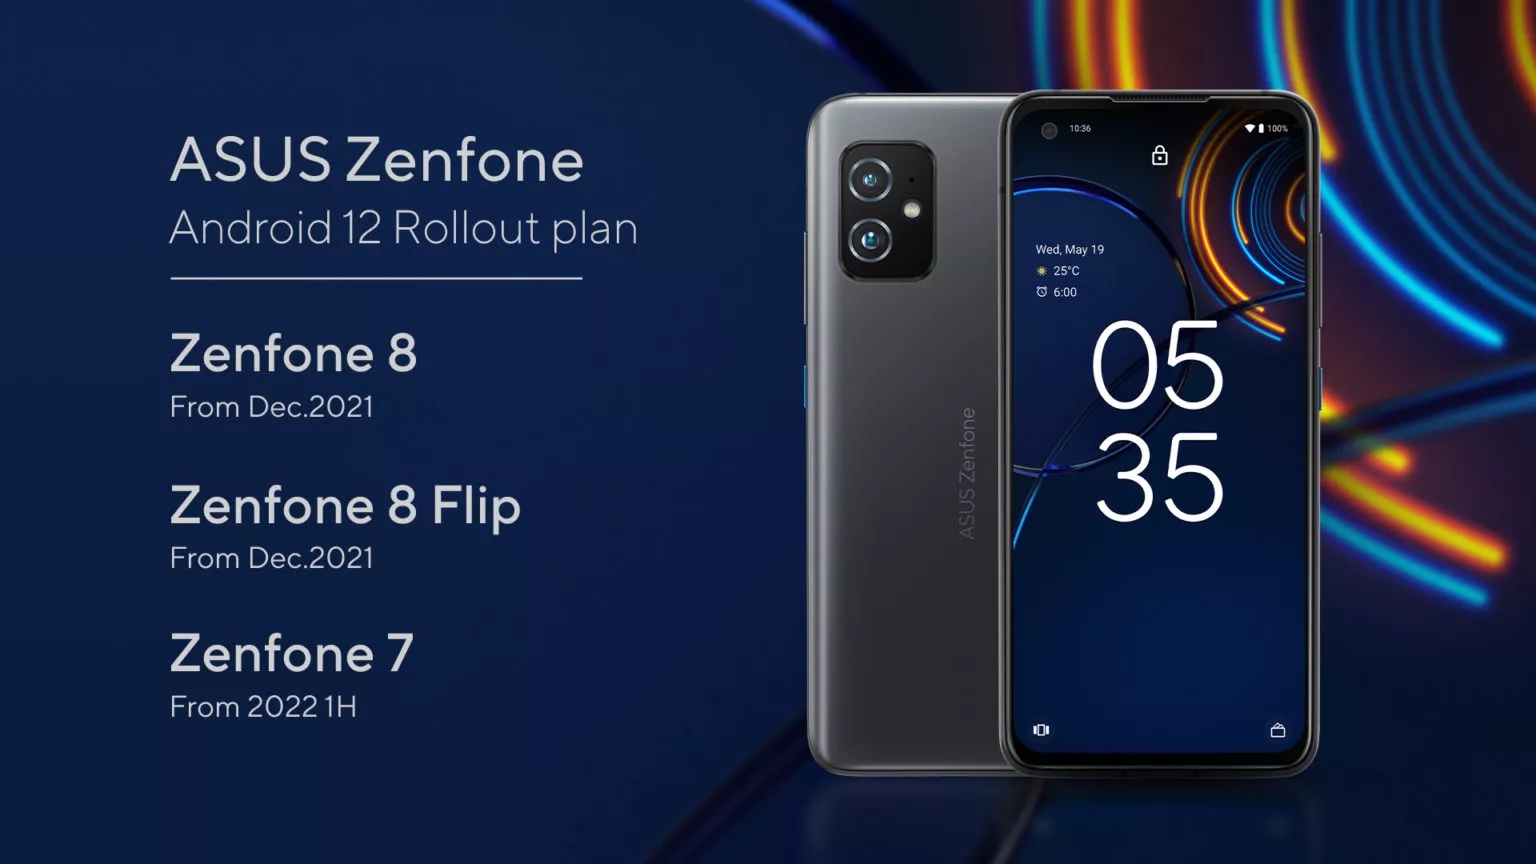 Asuksen ZenFone-puhelinten Android 12 -päivitysaikataulu.